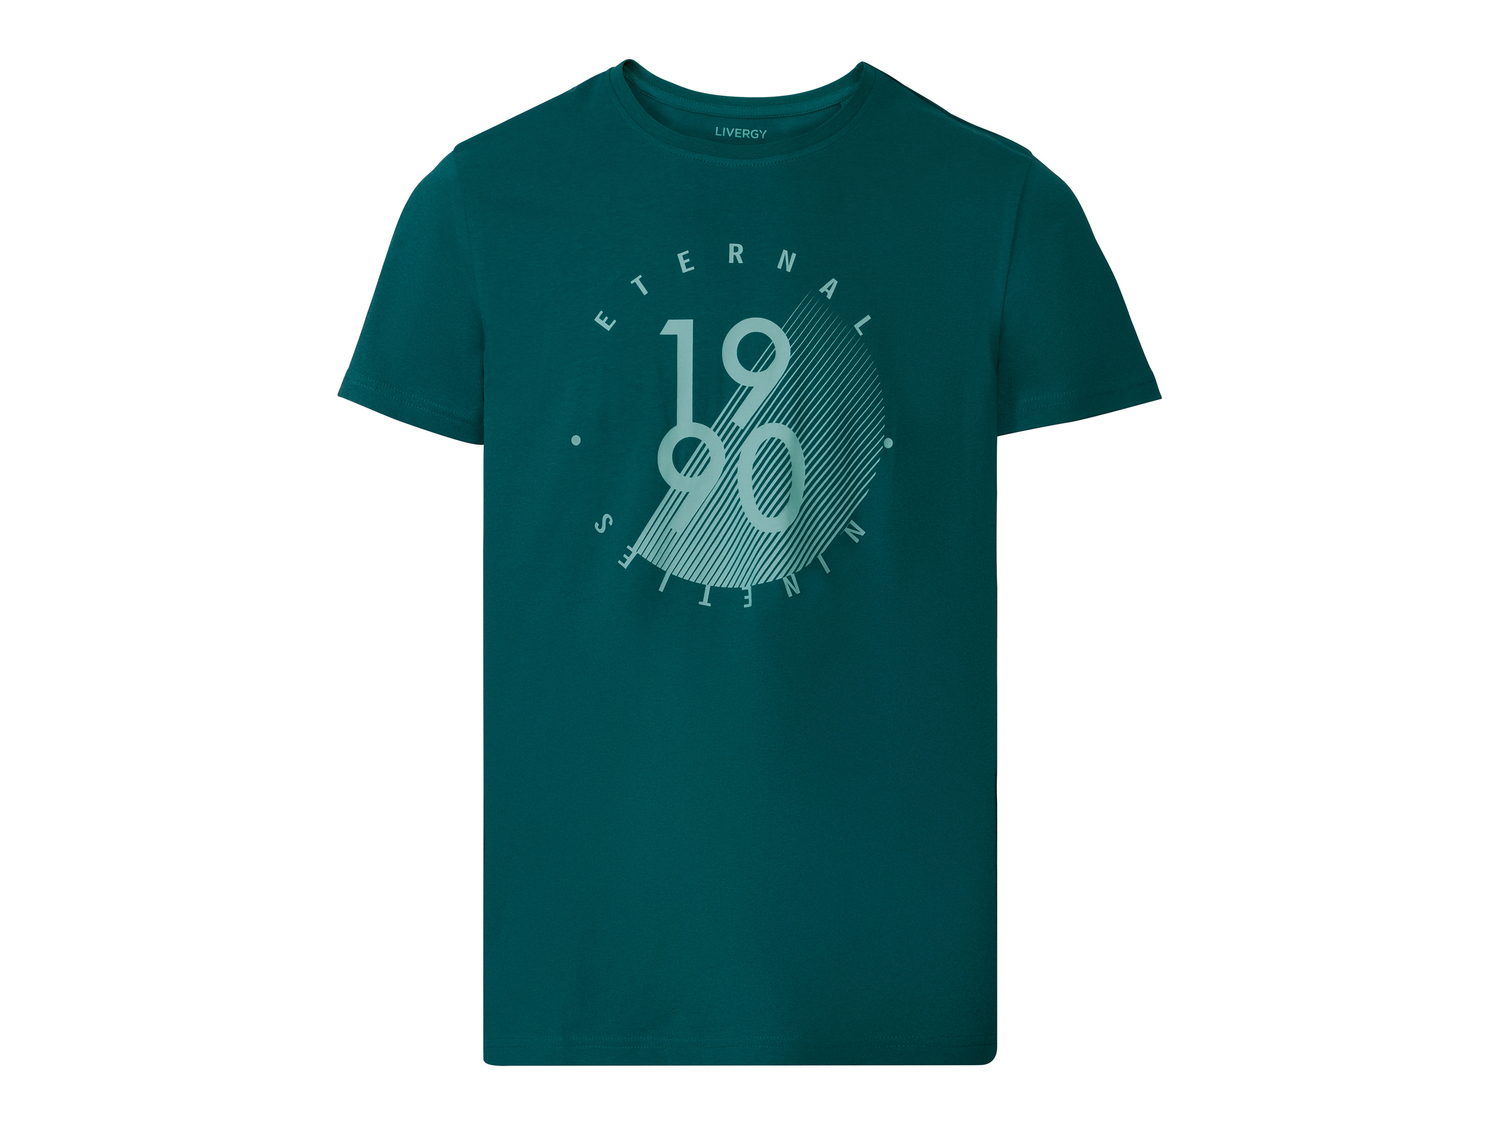 T-shirt da uomo Livergy, prezzo 3.99 &#8364; 
Misure: S-XL
Taglie disponibili

Caratteristiche

- ...